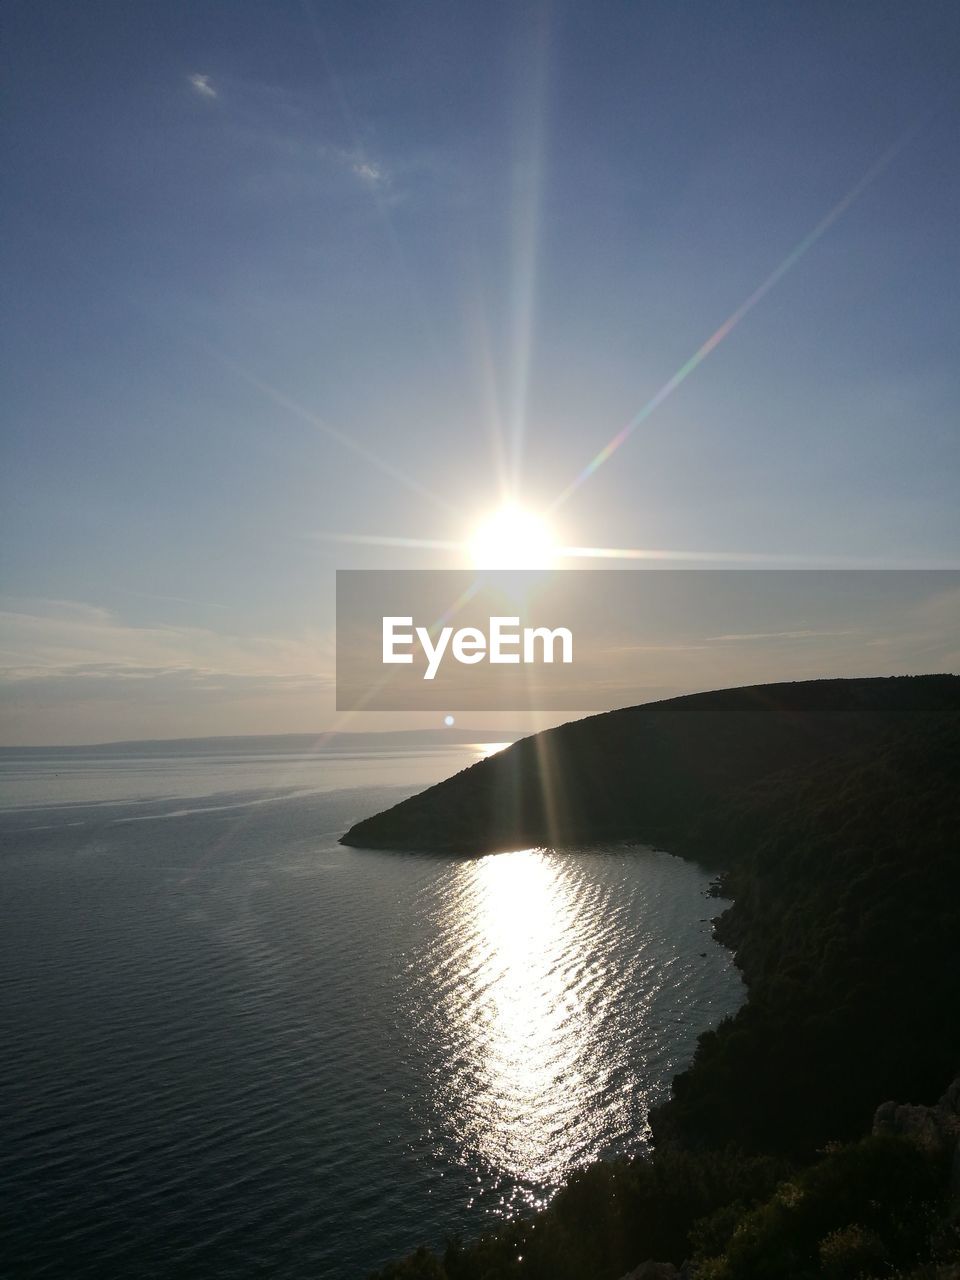 SCENIC VIEW OF SEA AGAINST BRIGHT SUN